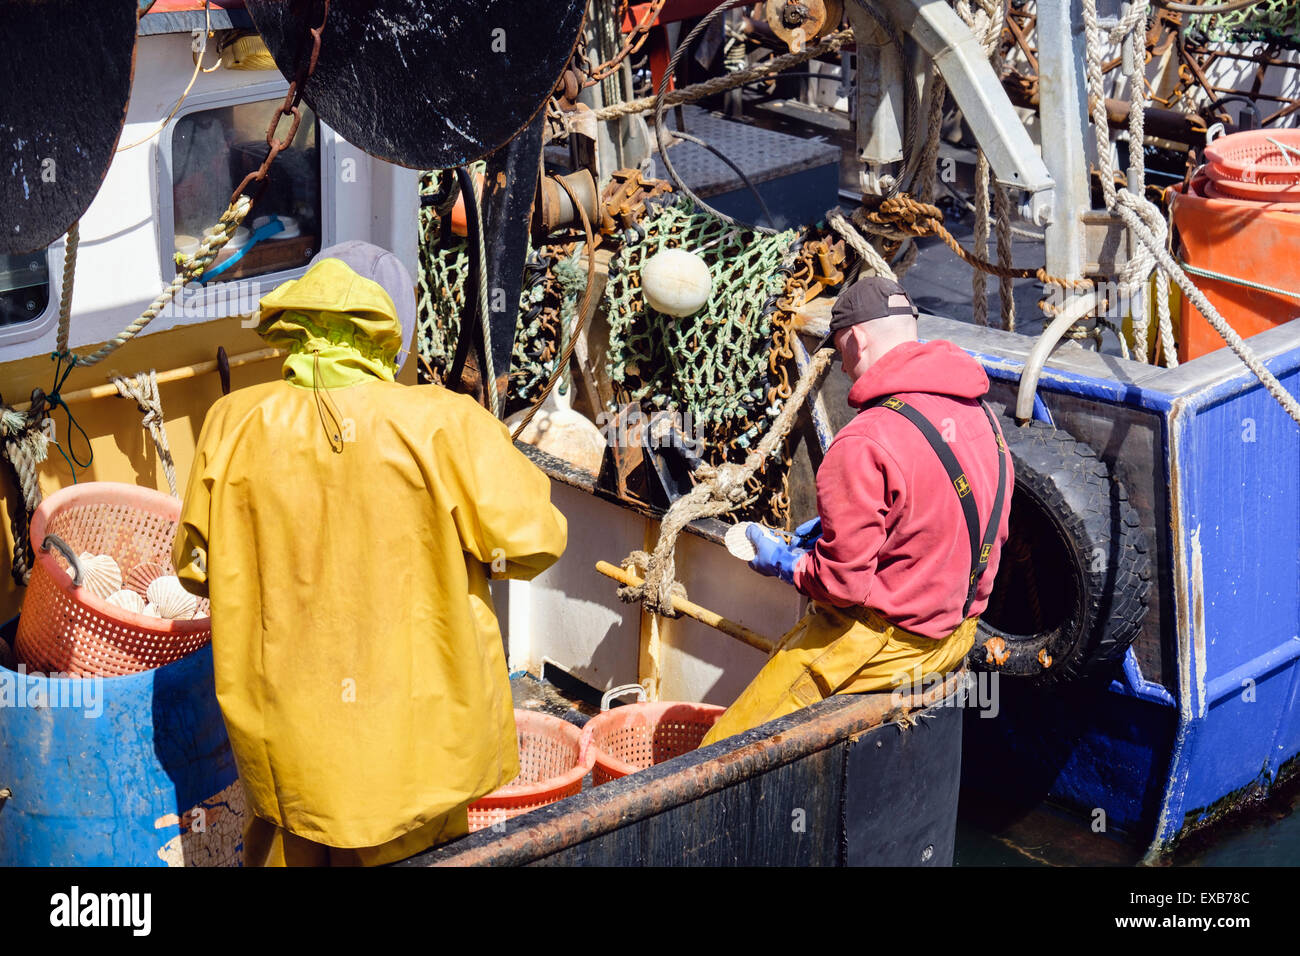 Fischer in einem Fischerboot Jakobsmuscheln öffnen, frische Jakobsmuscheln zu entfernen. Port Ellen Isle of Islay Hebriden Western Isles Schottland, Vereinigtes Königreich Stockfoto